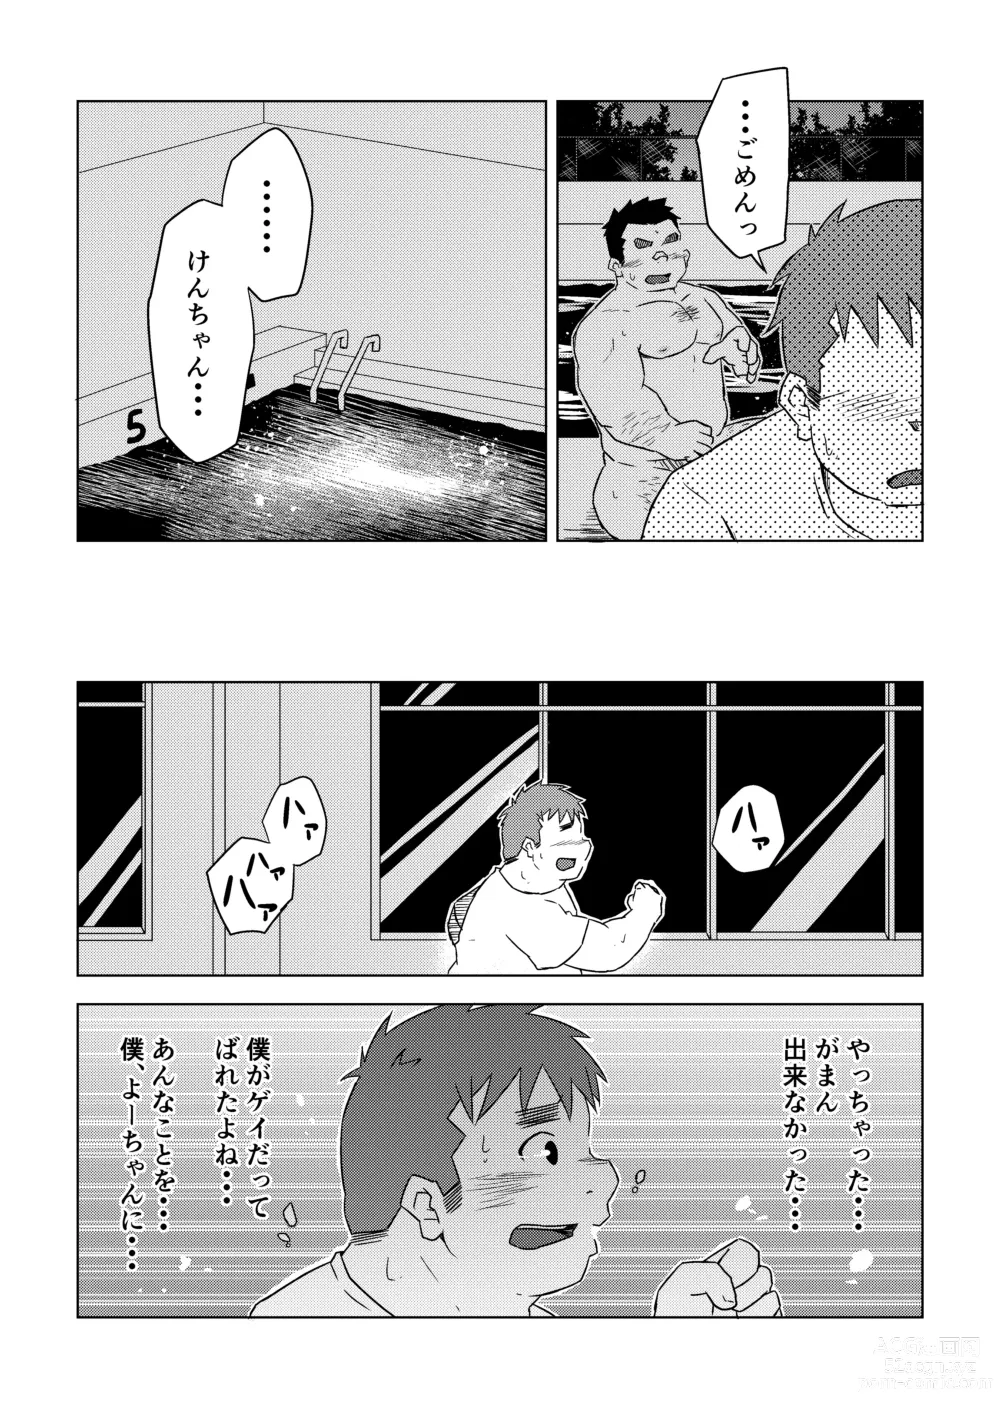 Page 36 of doujinshi Manten no Hoshi 1